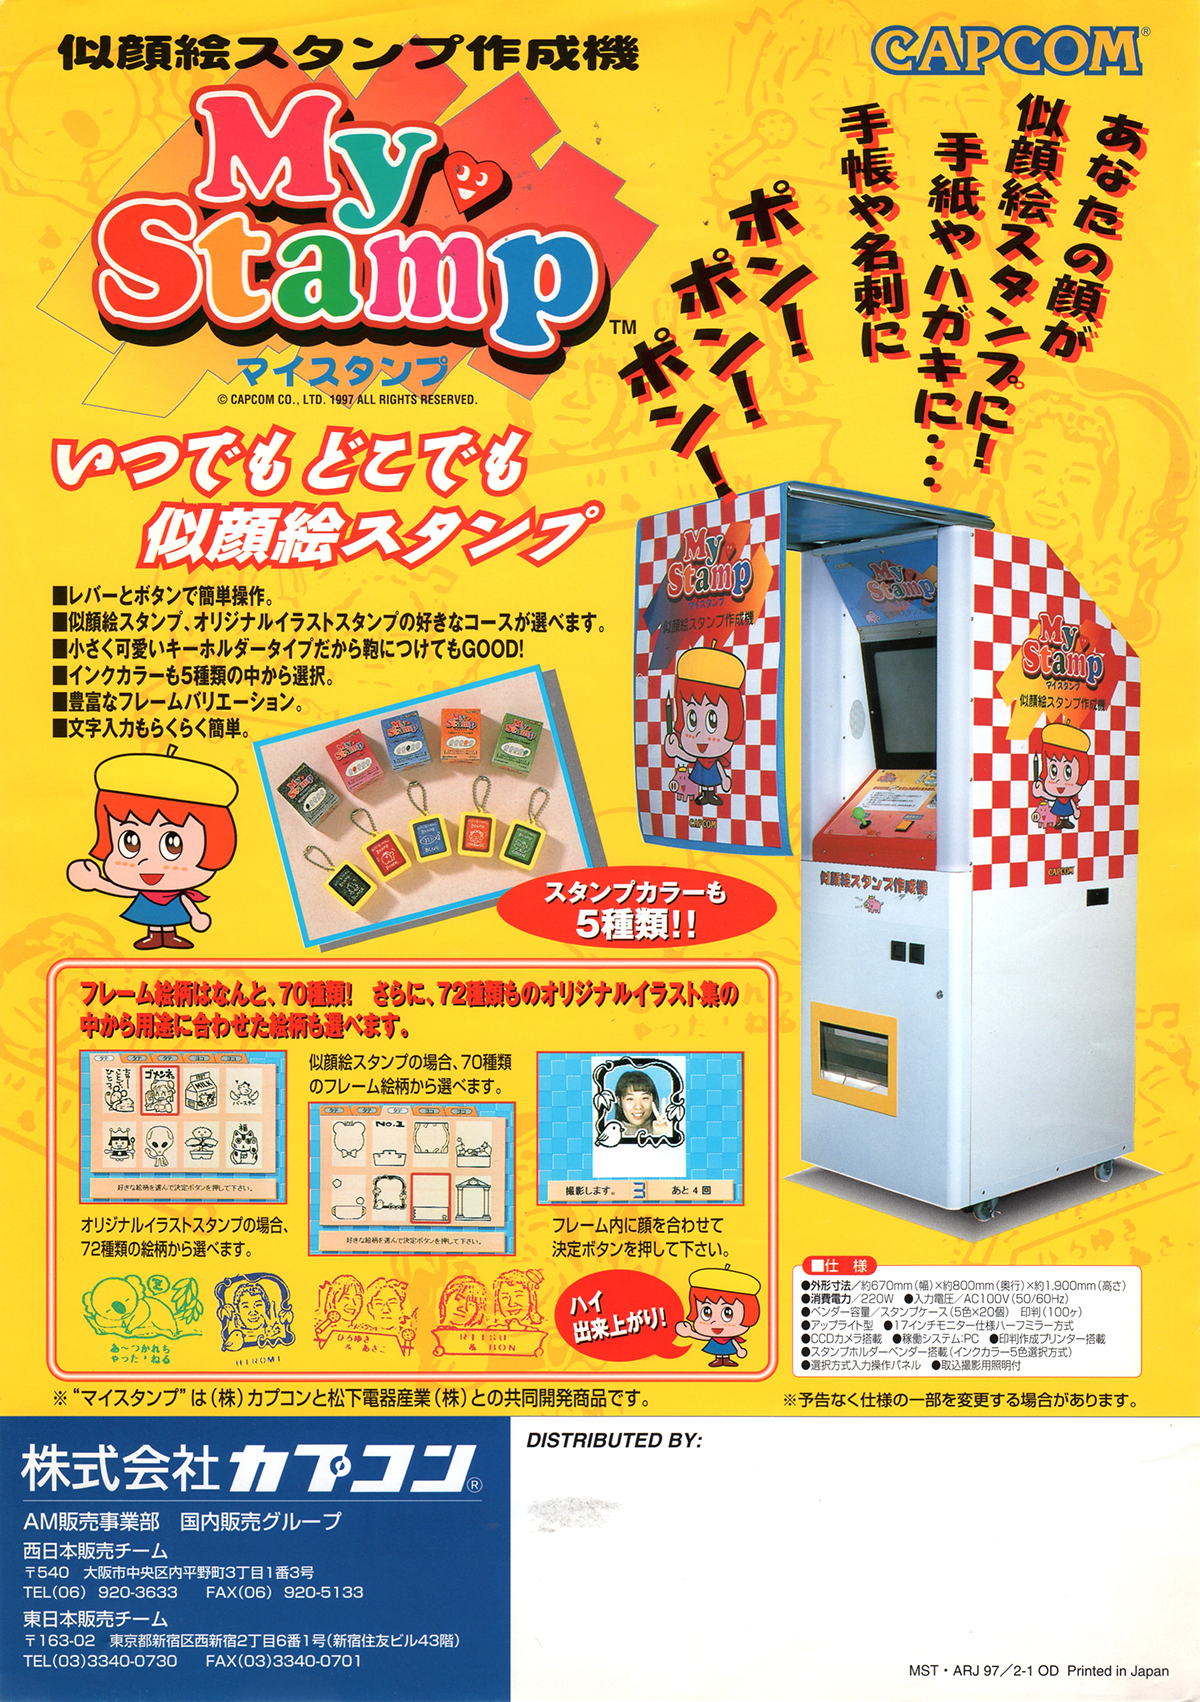 カプコン 似顔絵スタンプ作成機 マイスタンプ チラシ Capcom My Stamp Flyer